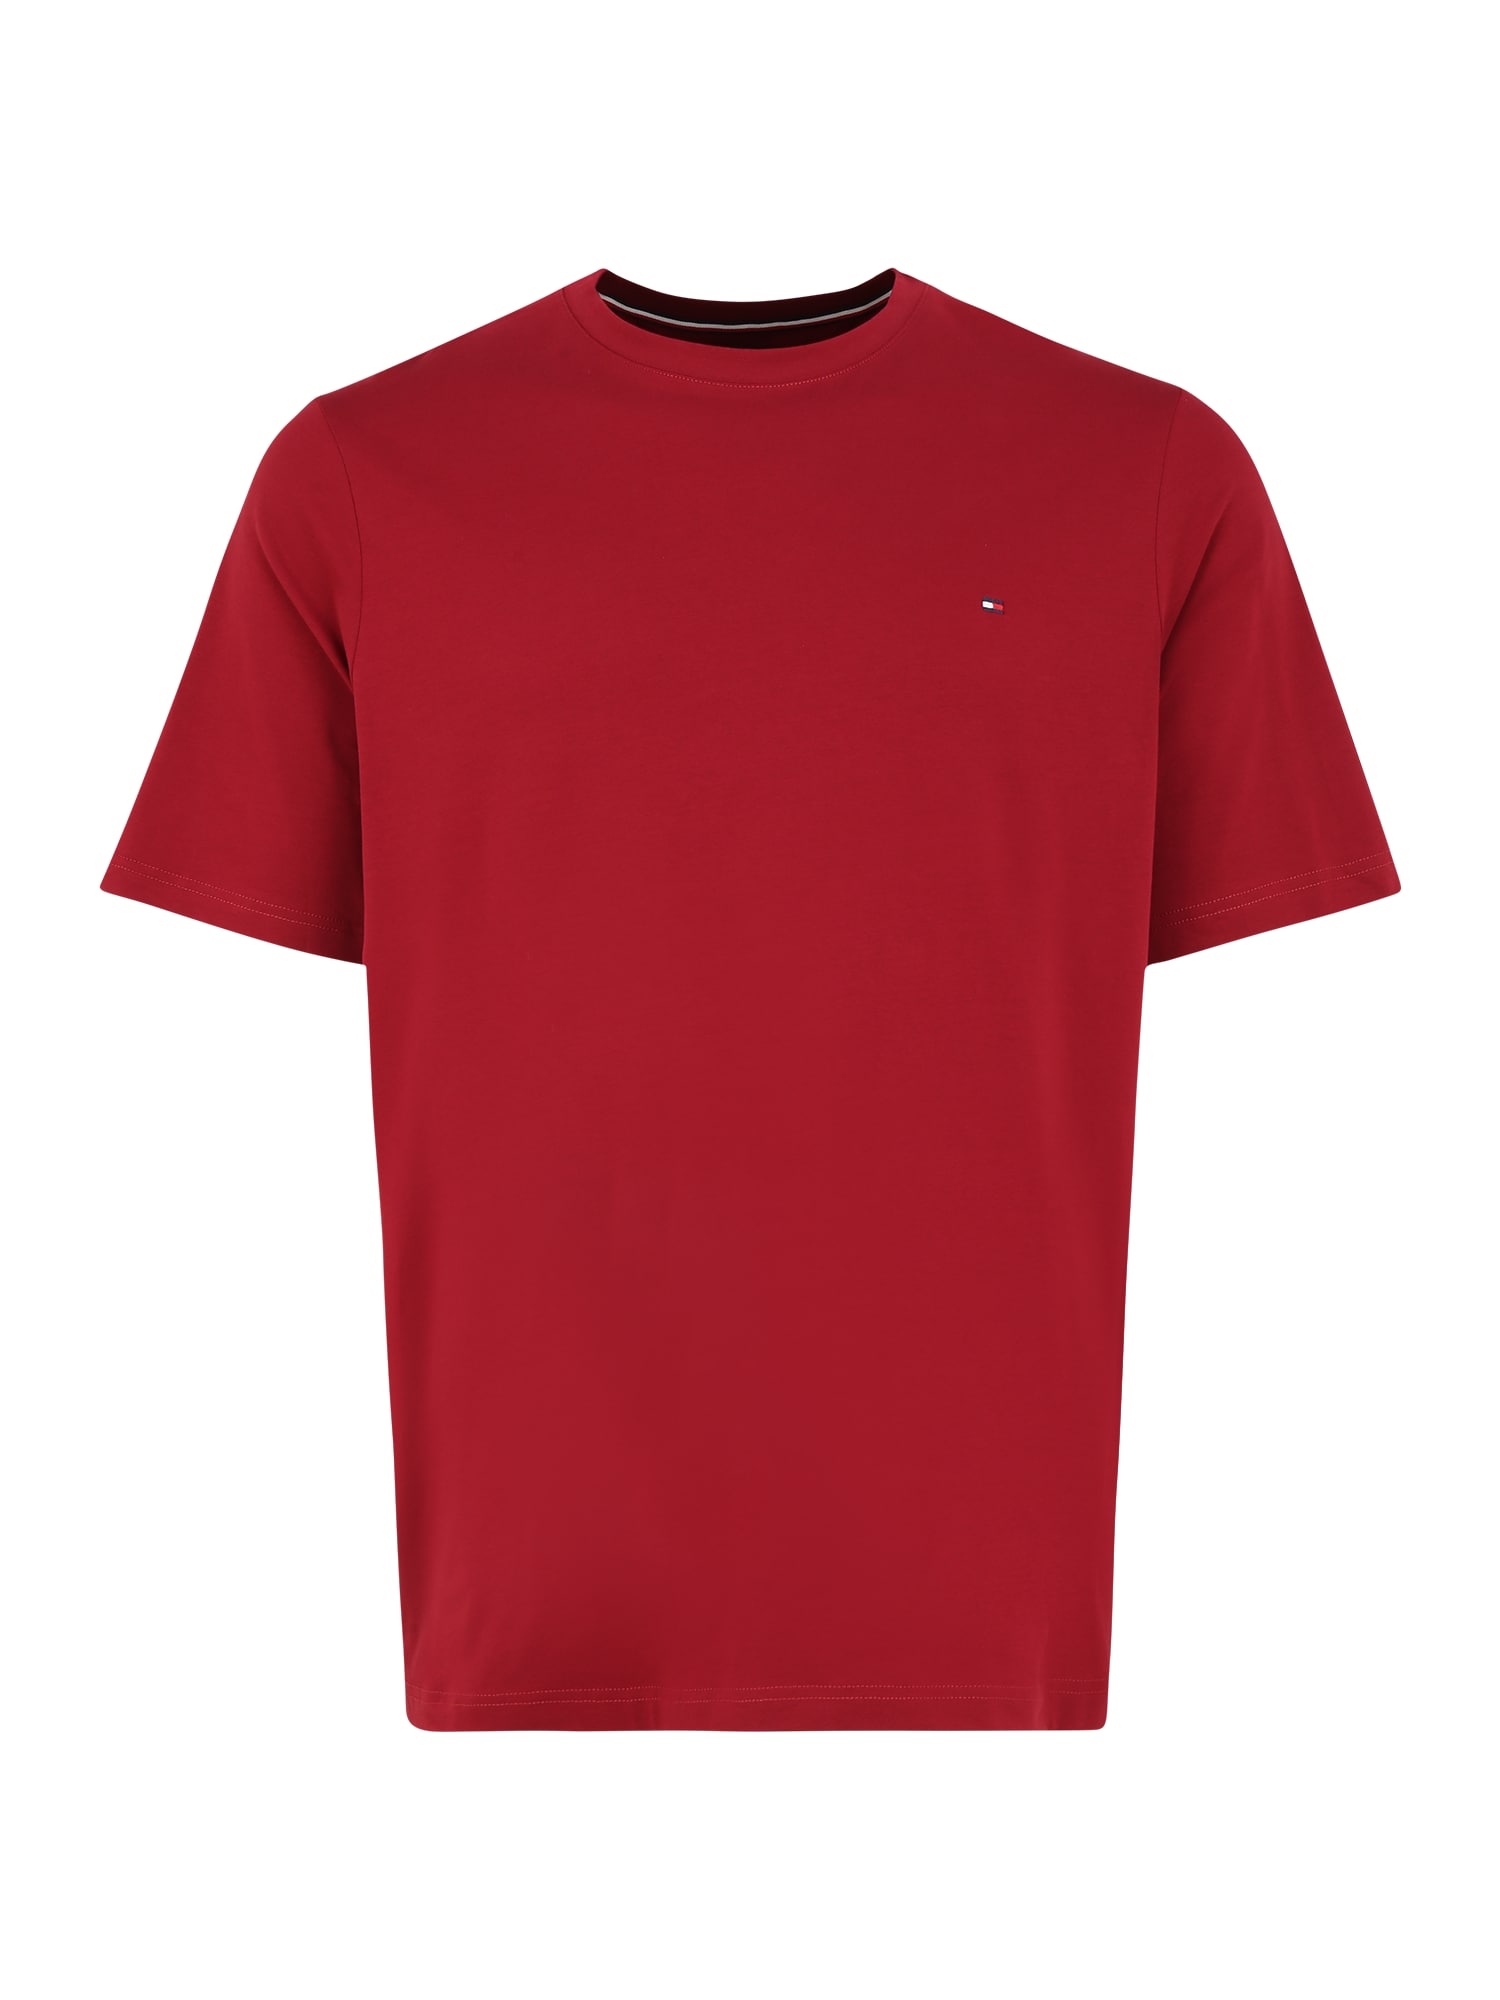 Tommy Hilfiger Big & Tall Marškinėliai pastelinė raudona / balta / tamsiai mėlyna / raudona